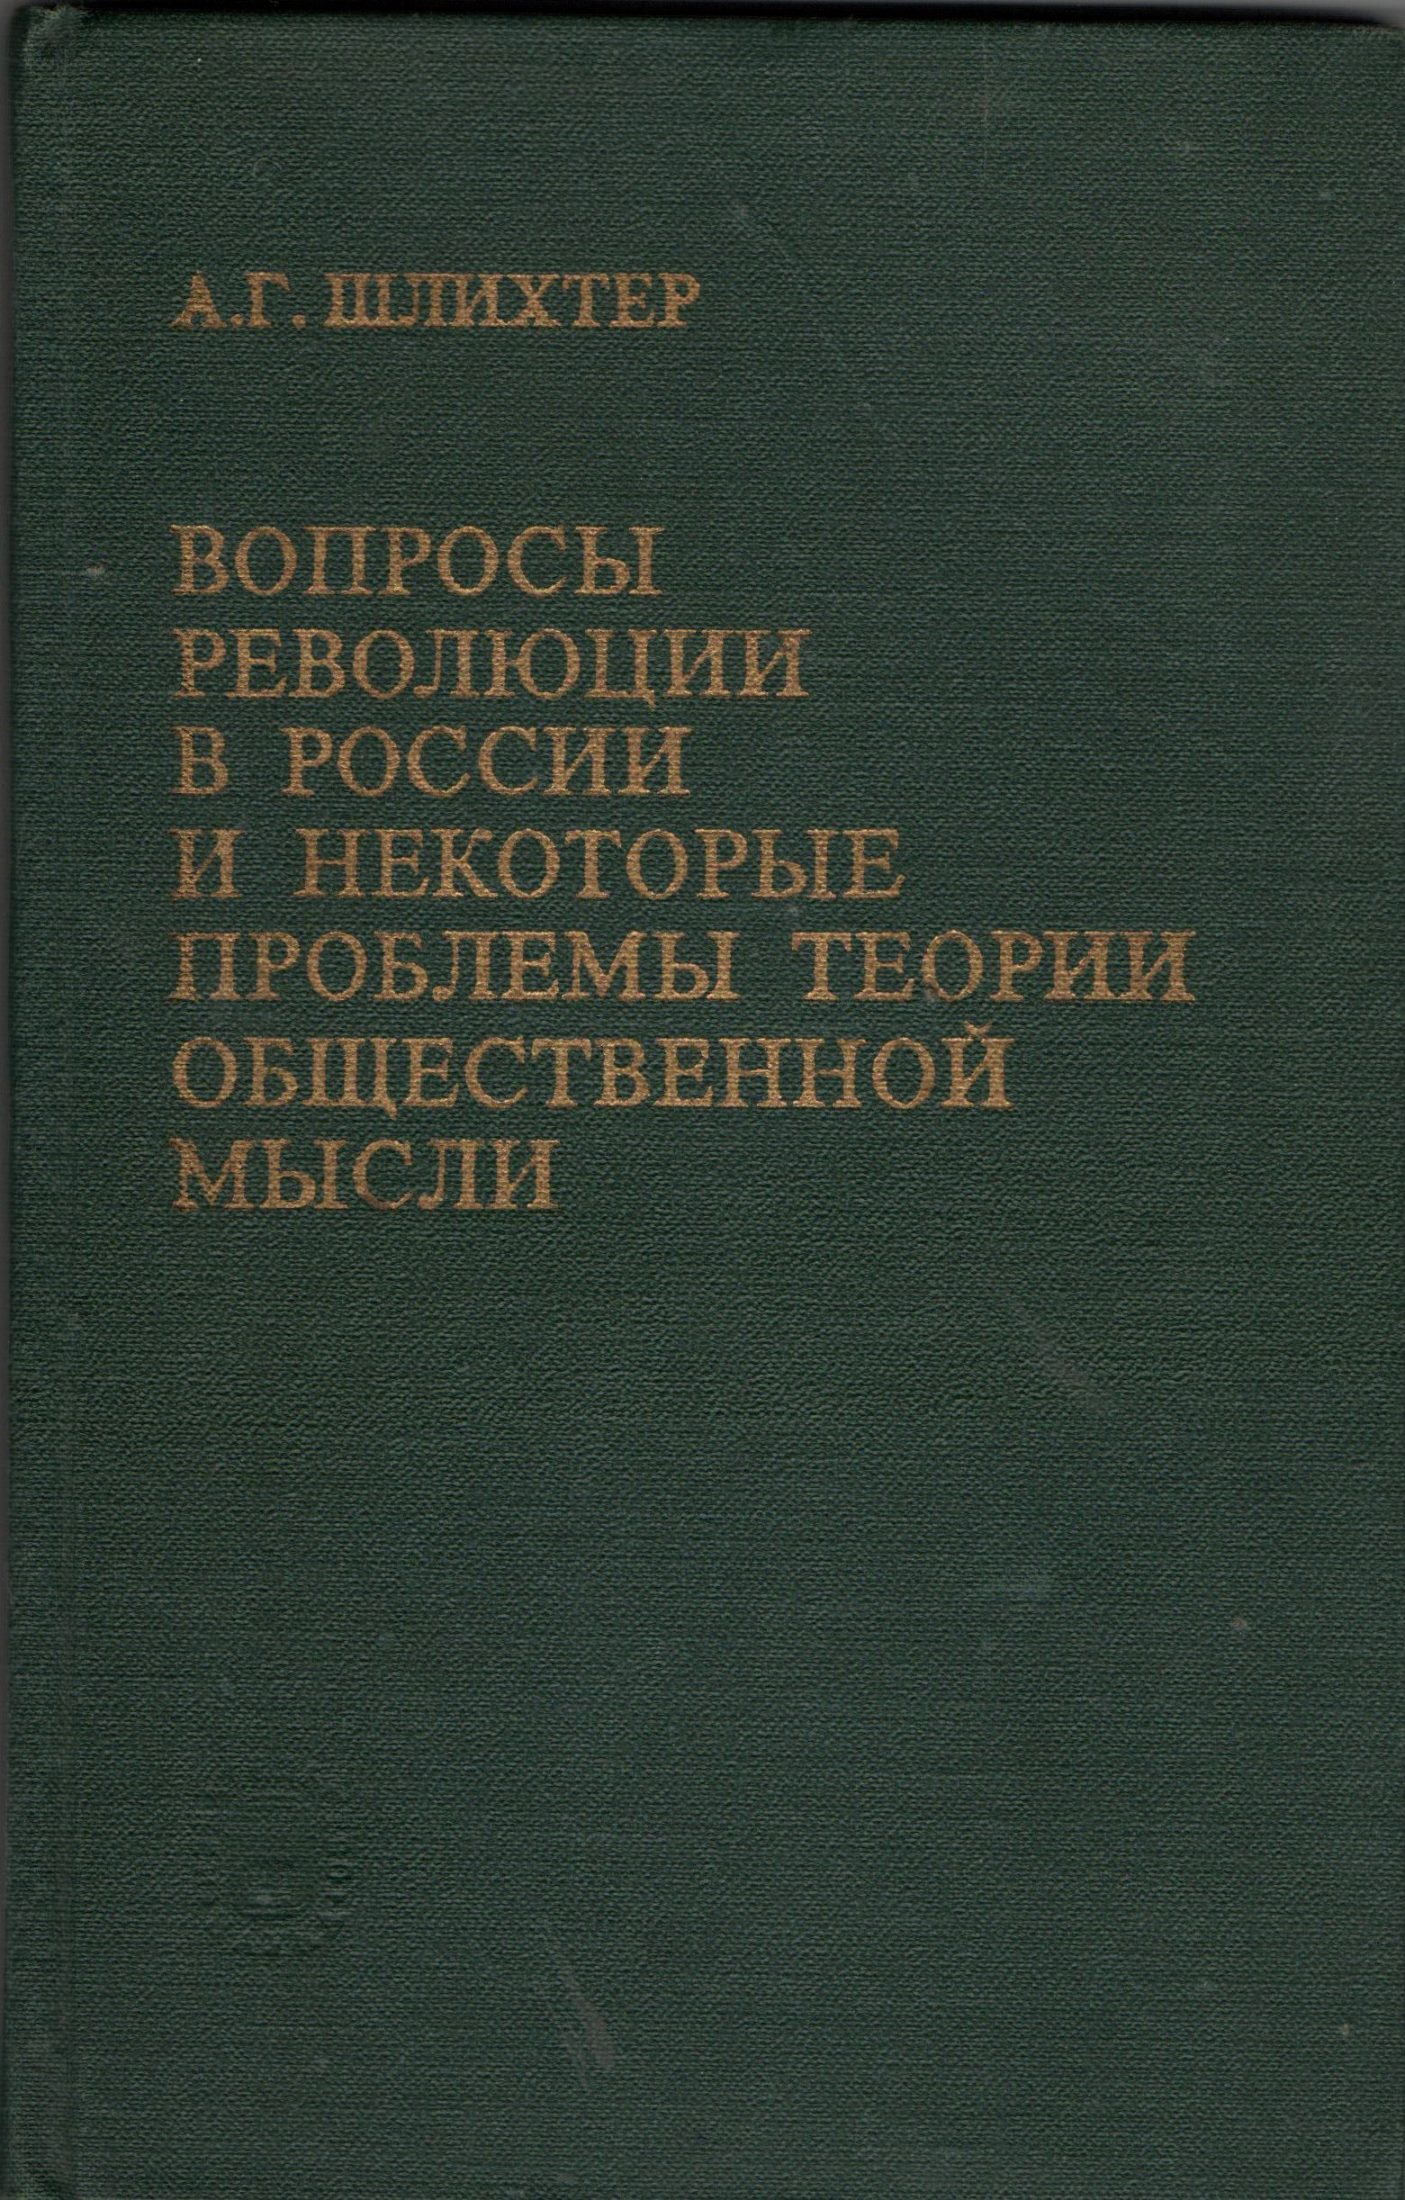 Книга "Шлихтер А. Г. "Вопросы революции в России и некоторые проблемы теории общественной мысли"